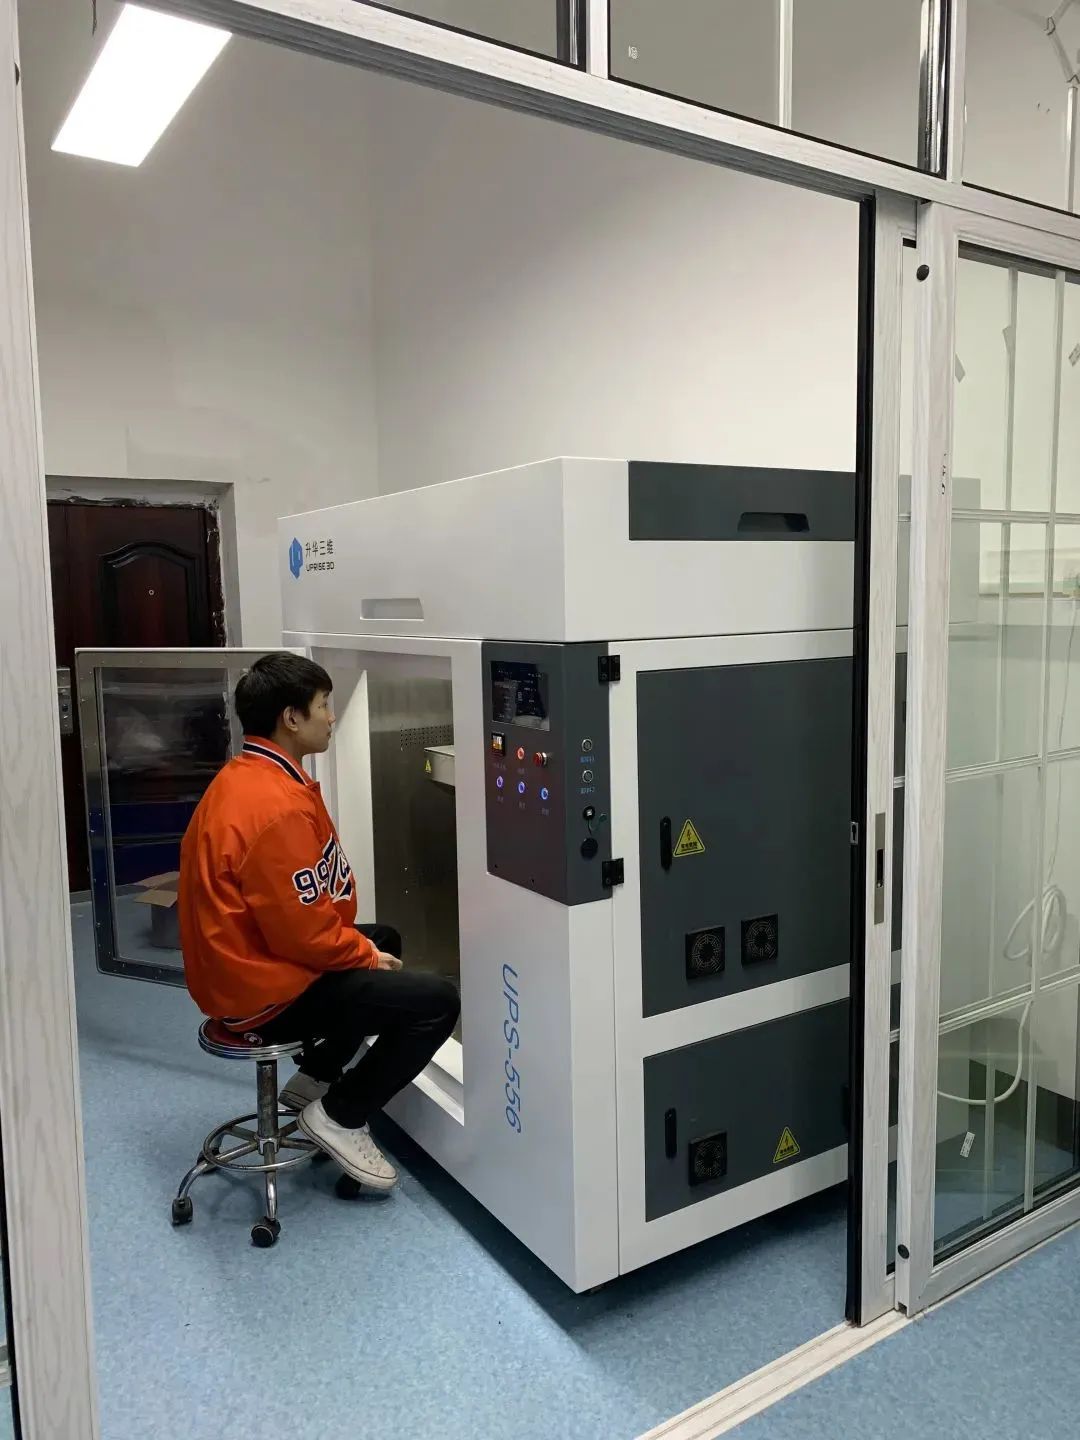 中南大学粉末冶金国家重点实验室顺利验收间接3d打印系统